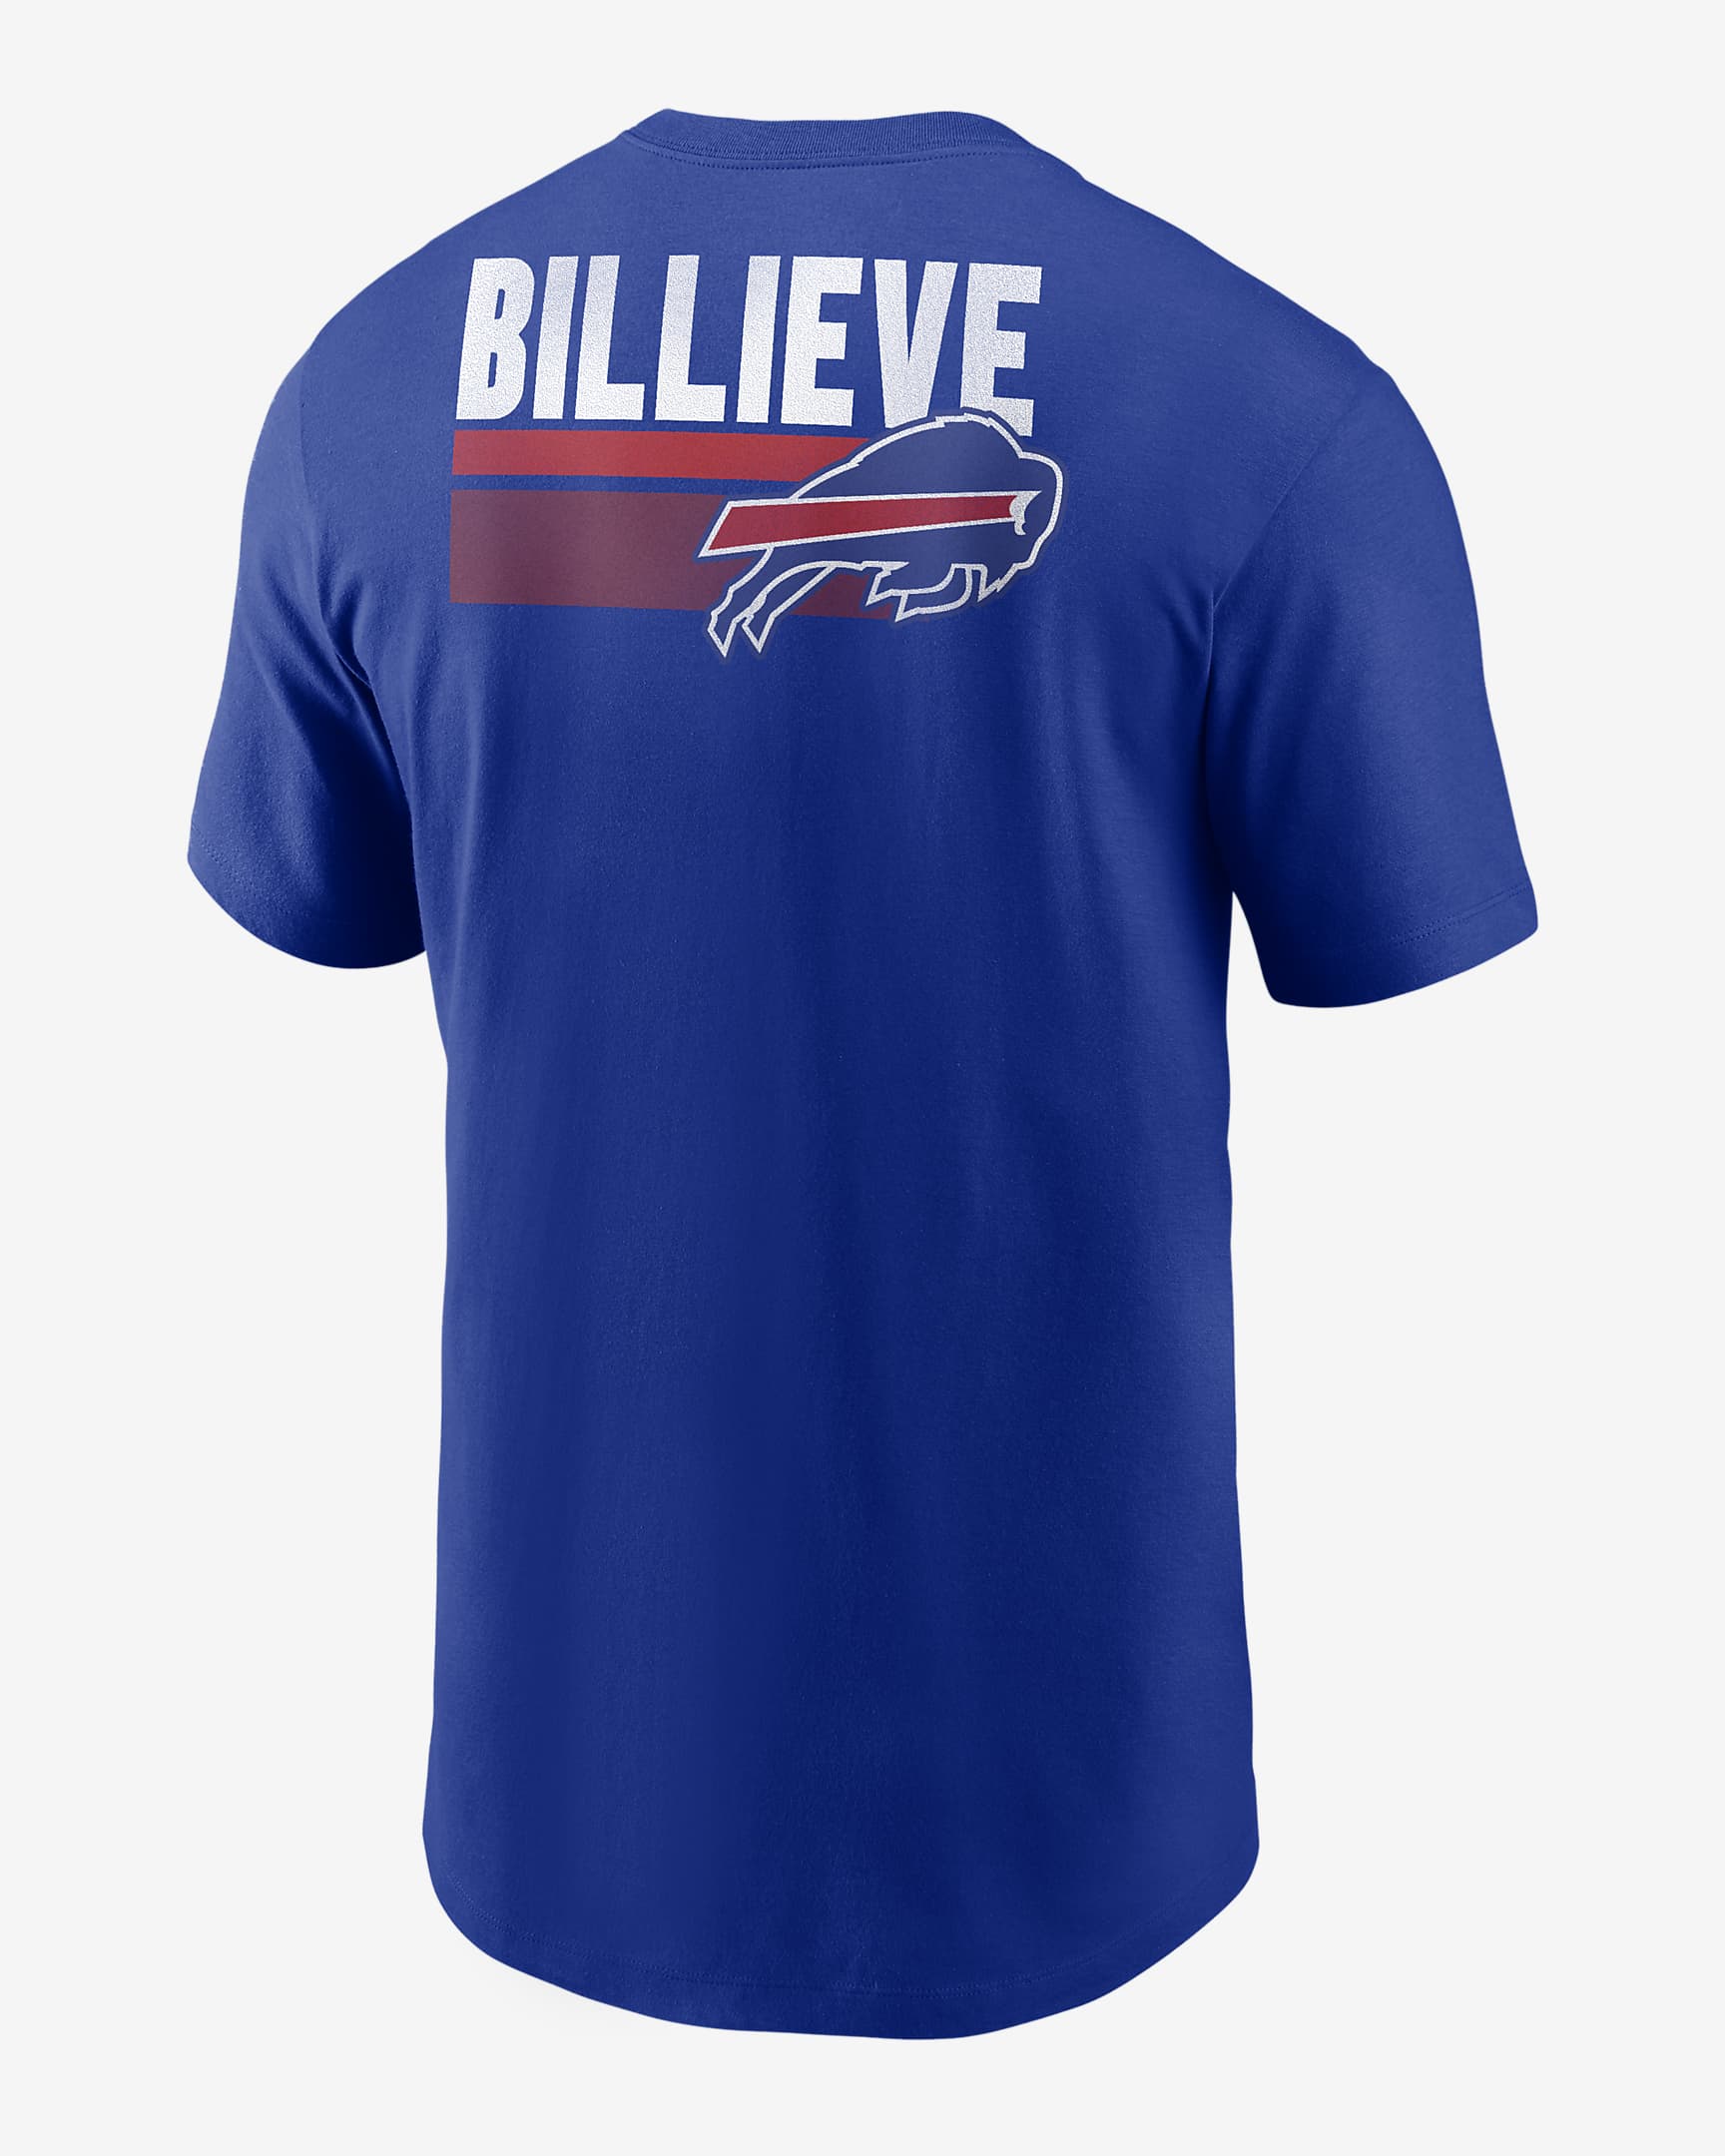 Playera Nike de la NFL para hombre Buffalo Bills Blitz Team Essential ...